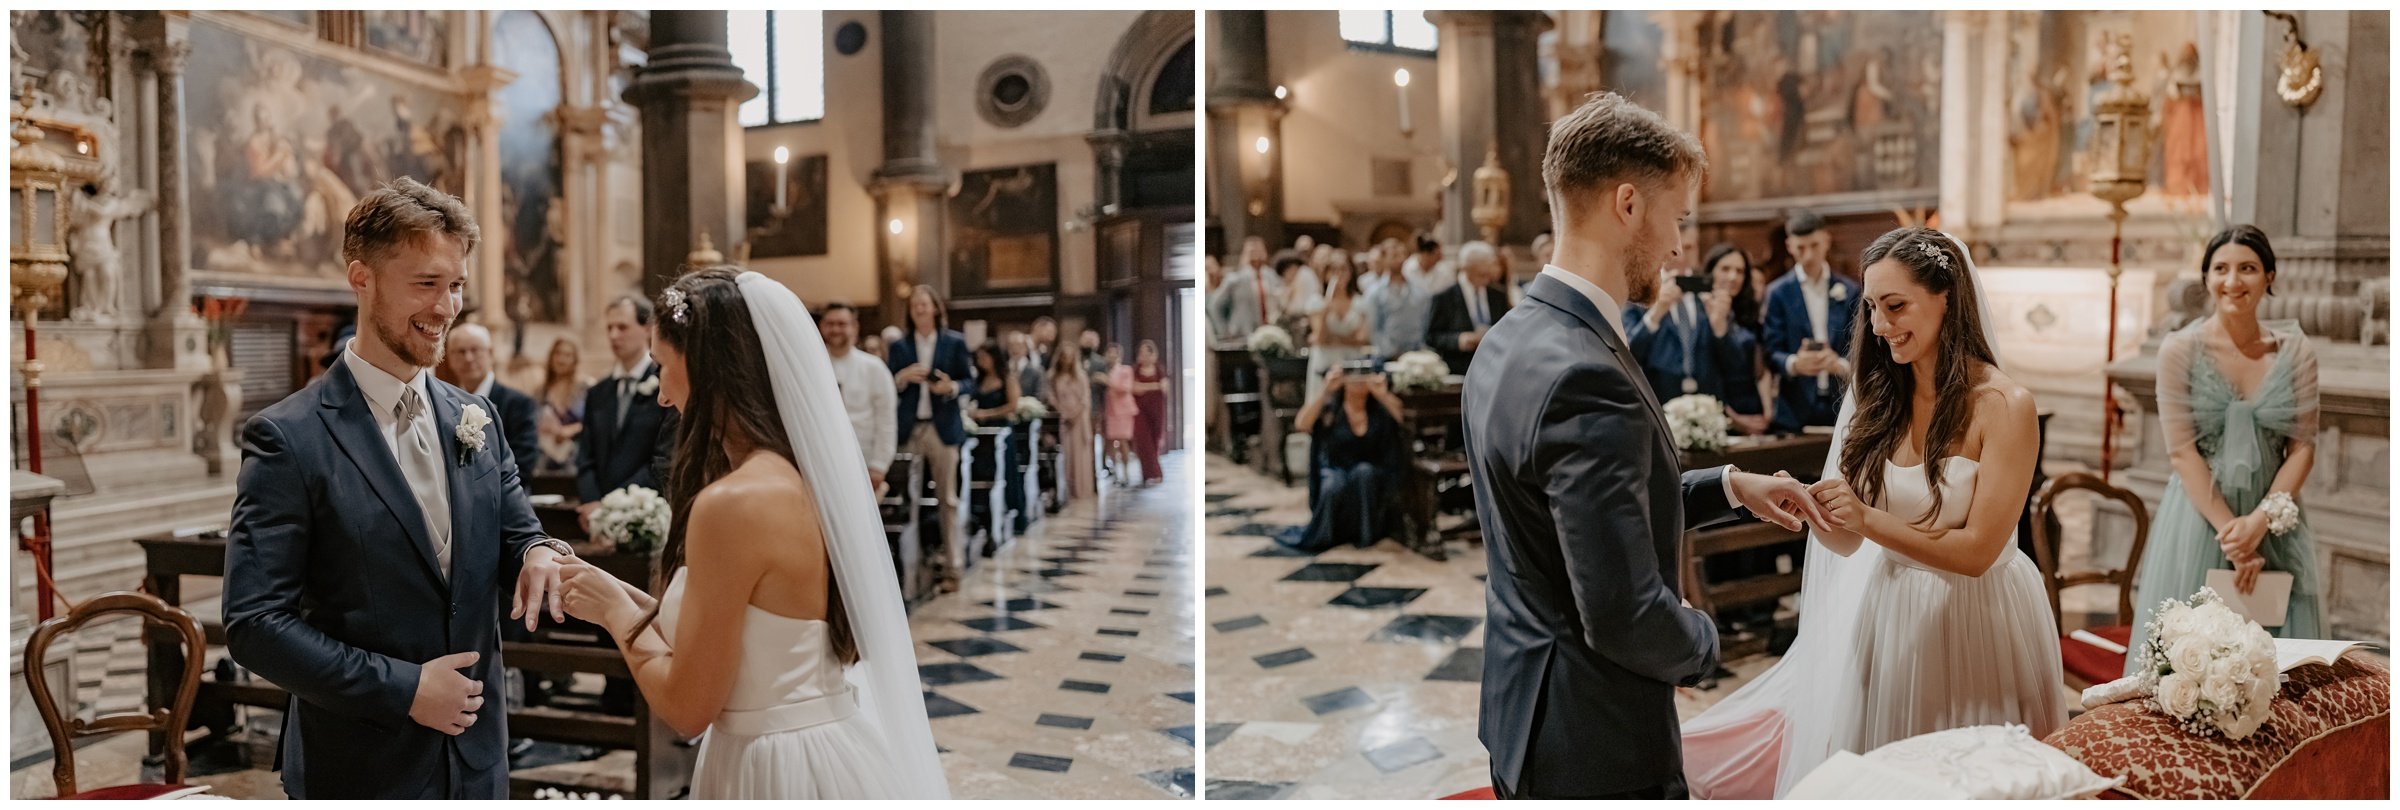 Matrimonio-san-servolo-fotografo-matrimonio-treviso-fotografo-matrimonio-venezia_0111.jpg